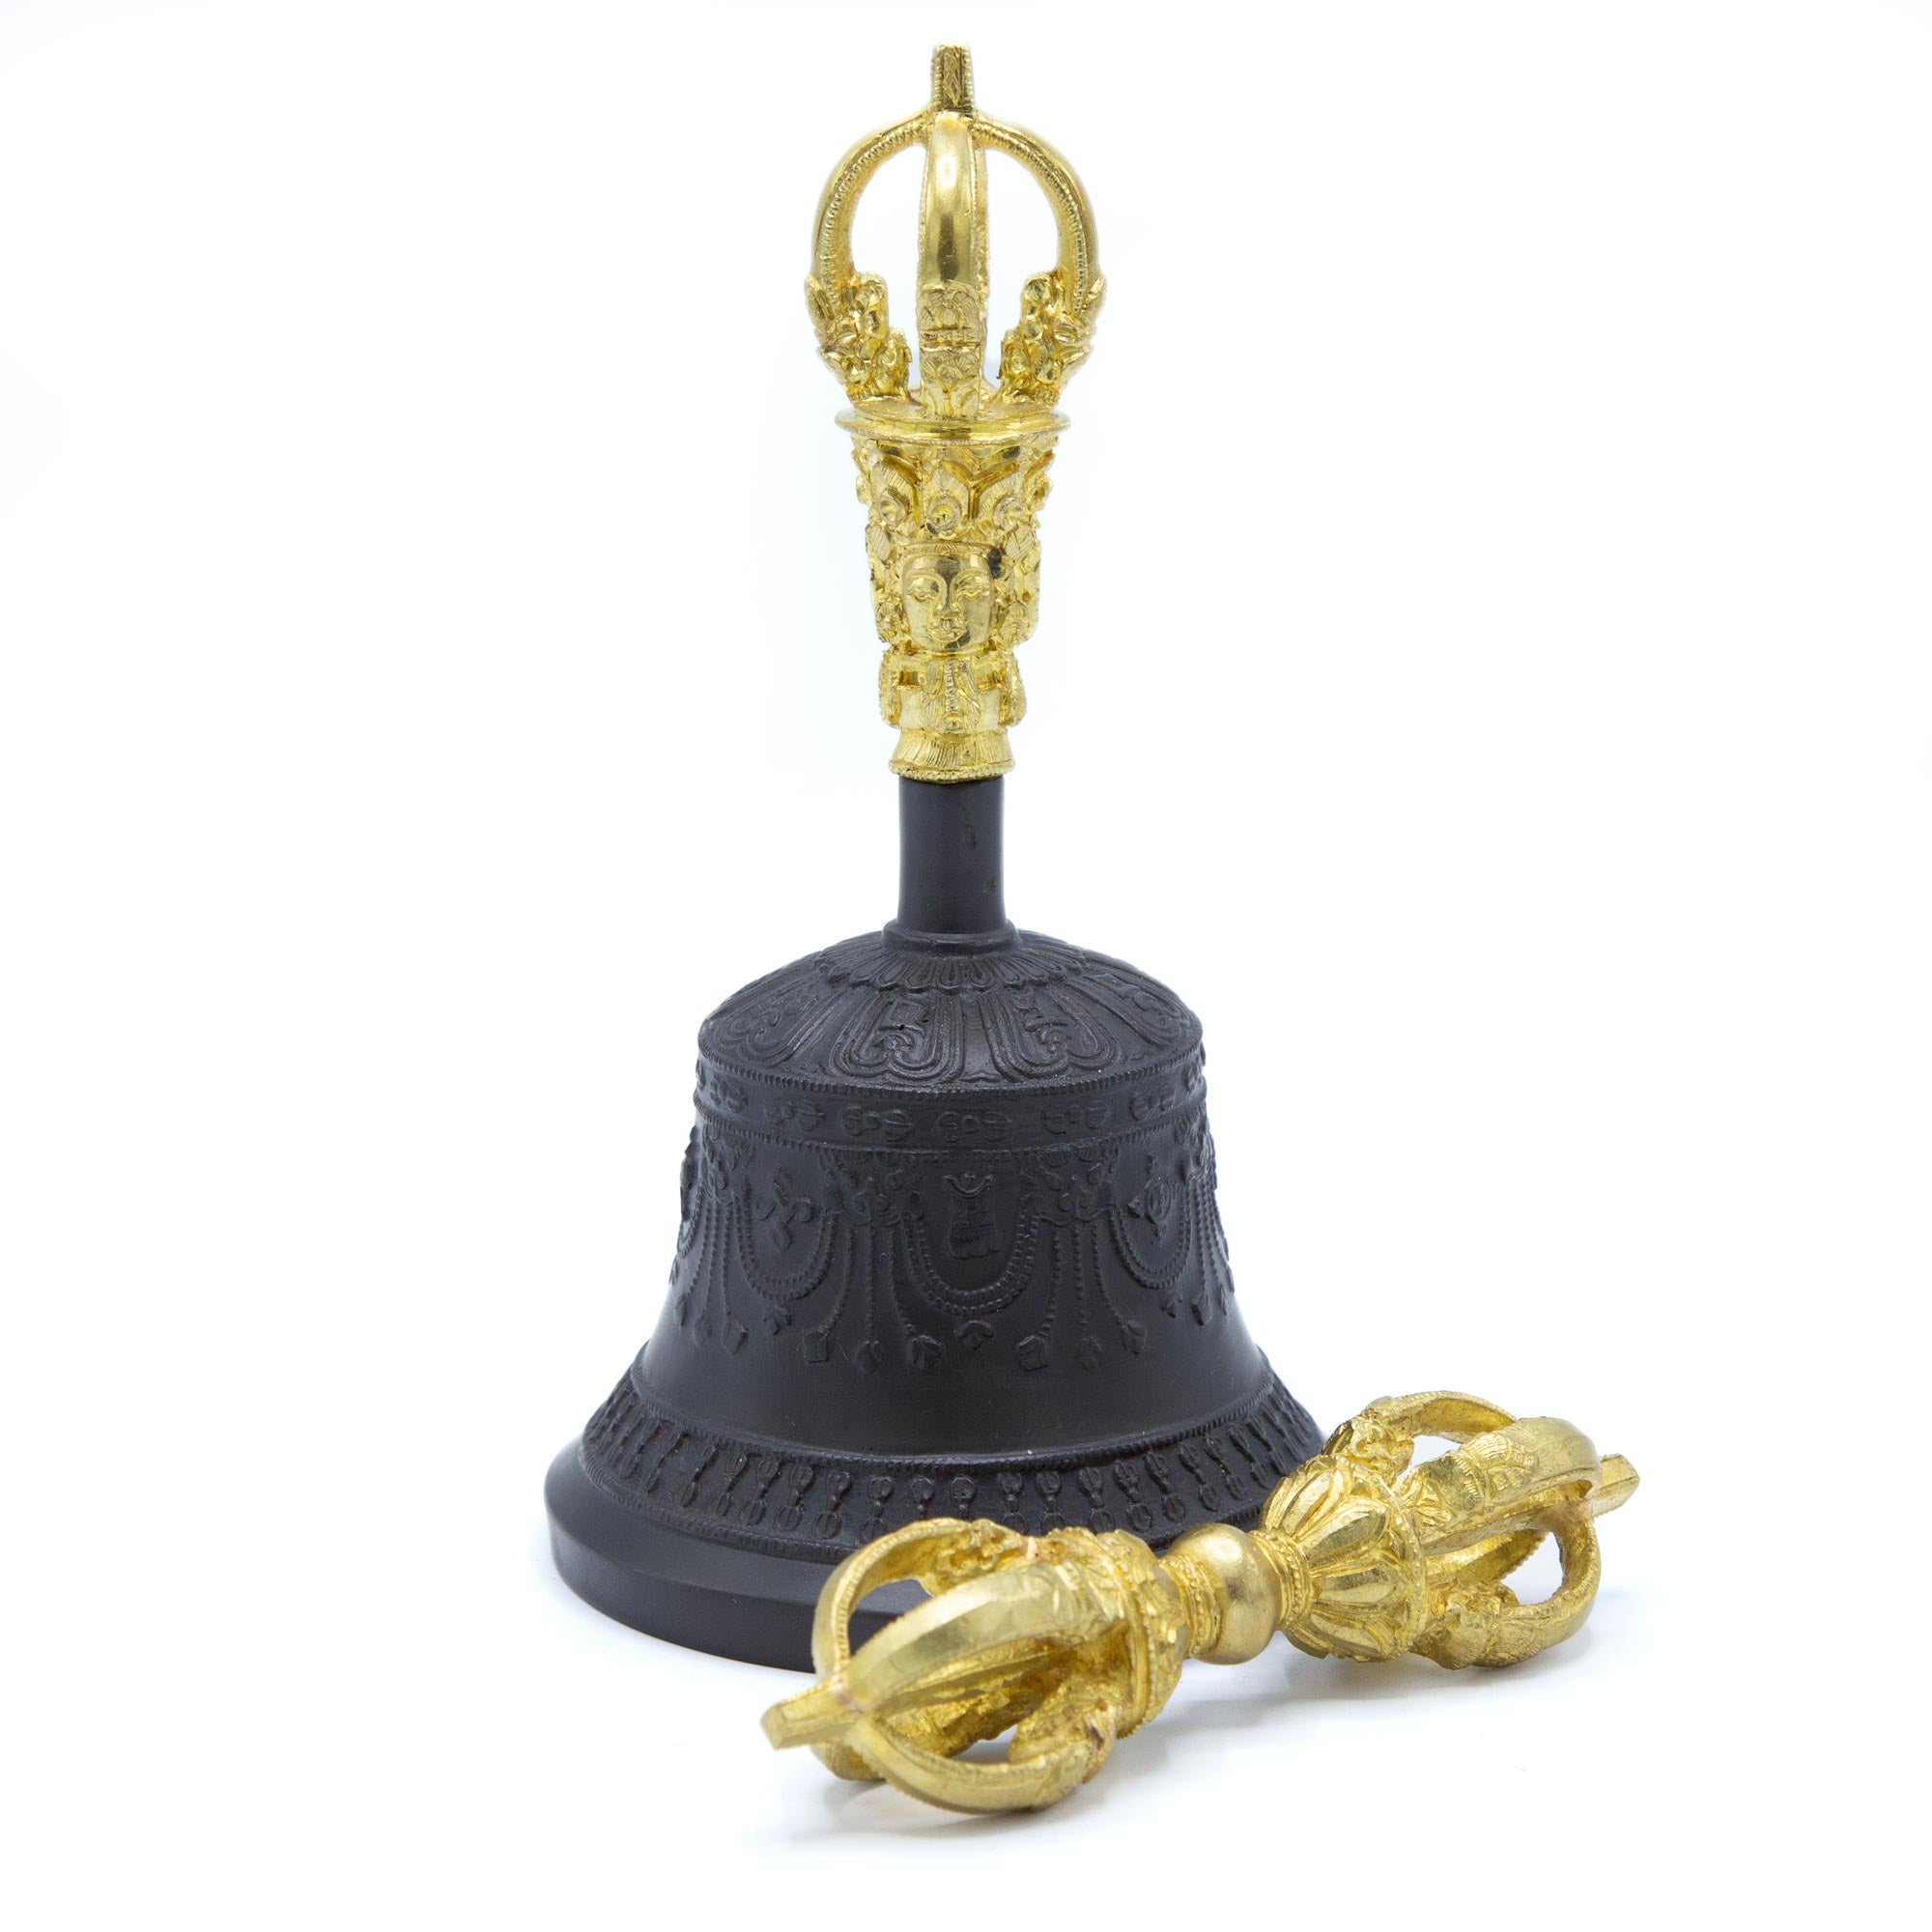 Tibetan Bell & Dorje - To begin or end a meditation practice